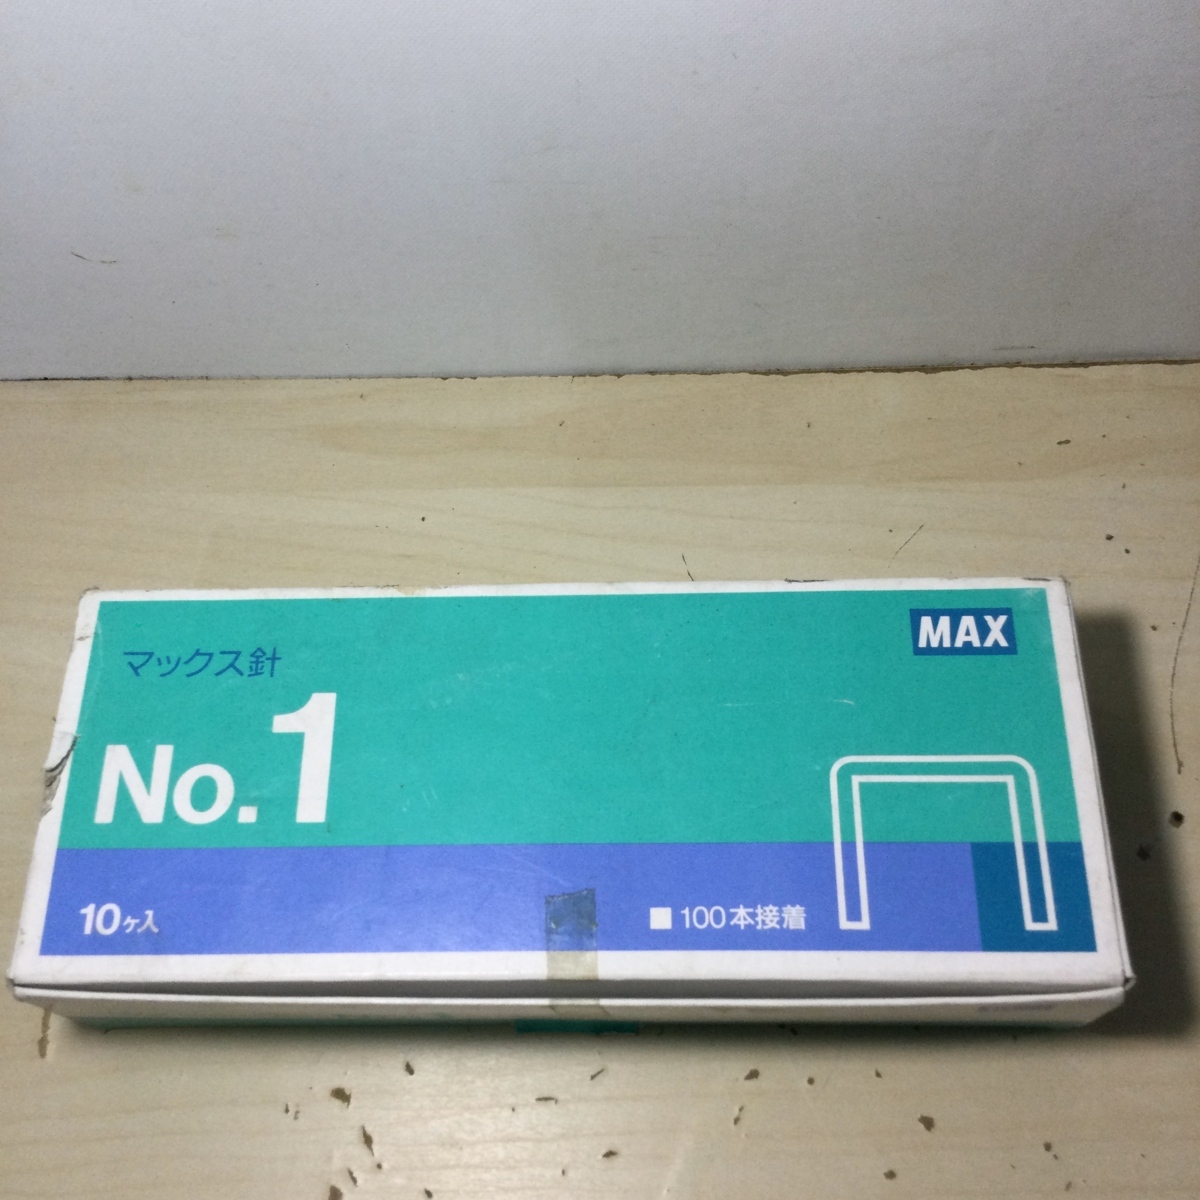 見事な MAX マックス ホッチキス針 小型 10号シリーズ使用針 No.10-1M